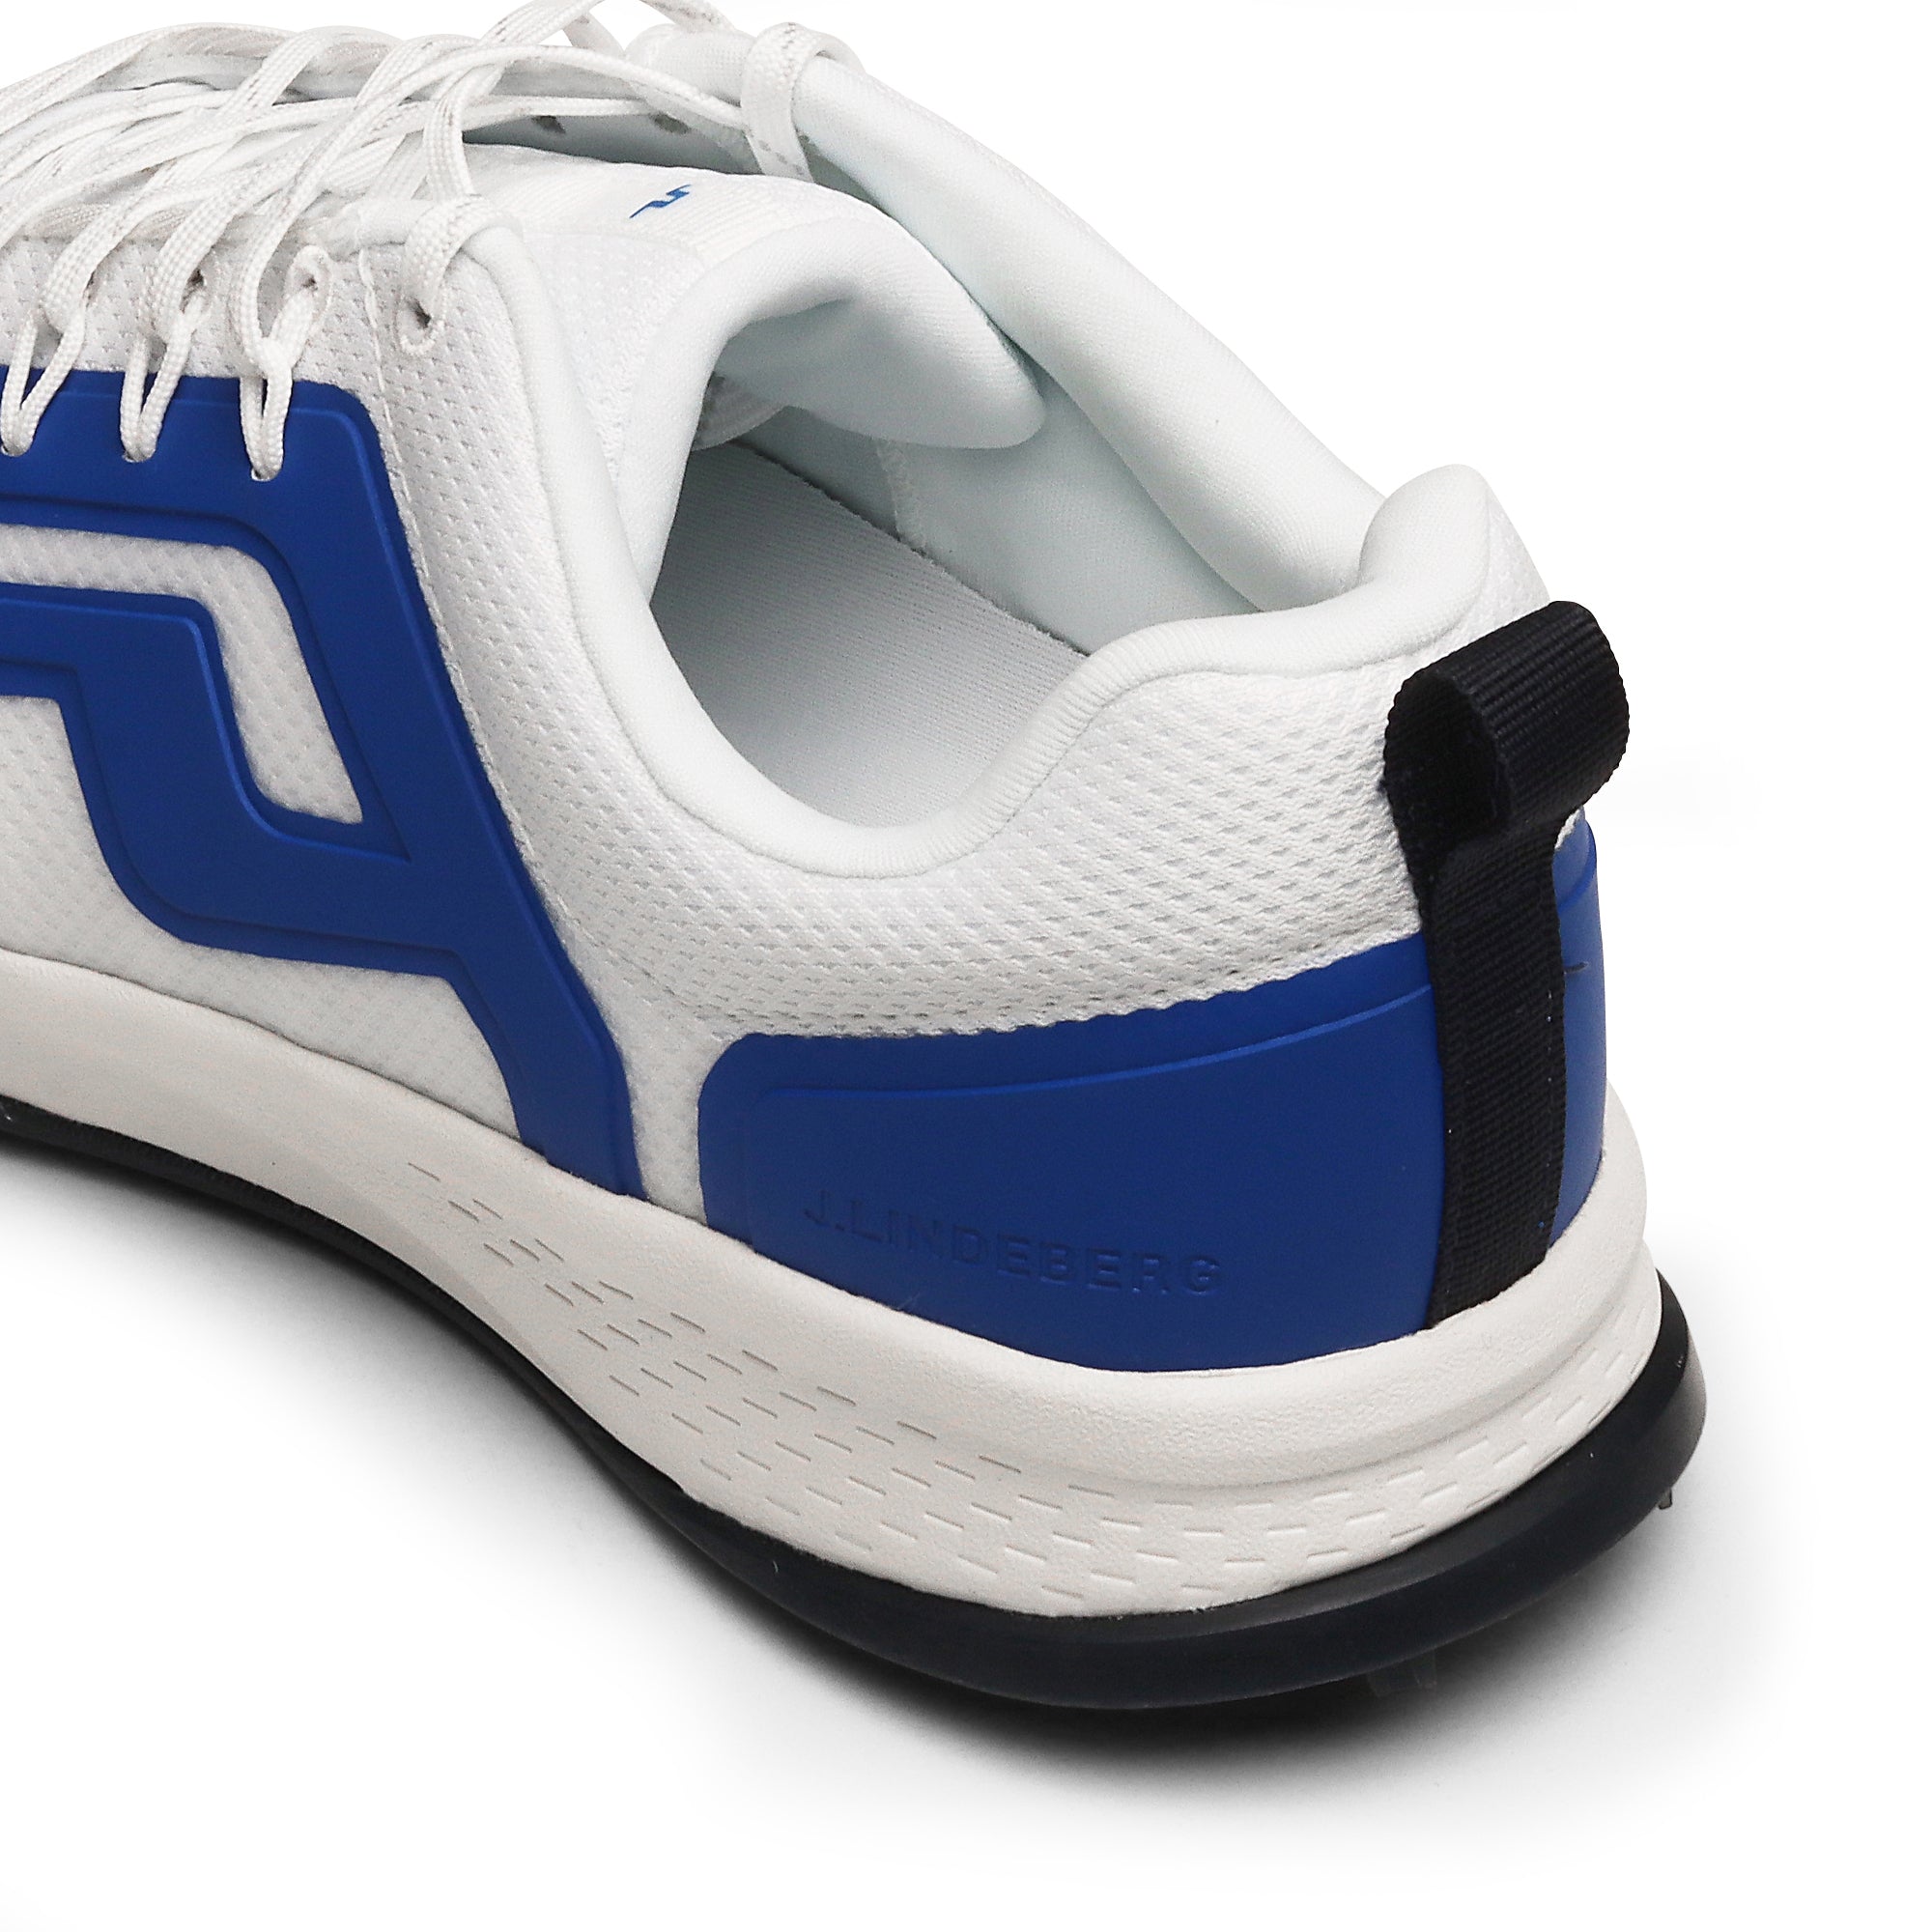 J.Lindeberg Range Finder Golf Shoes Blue 3